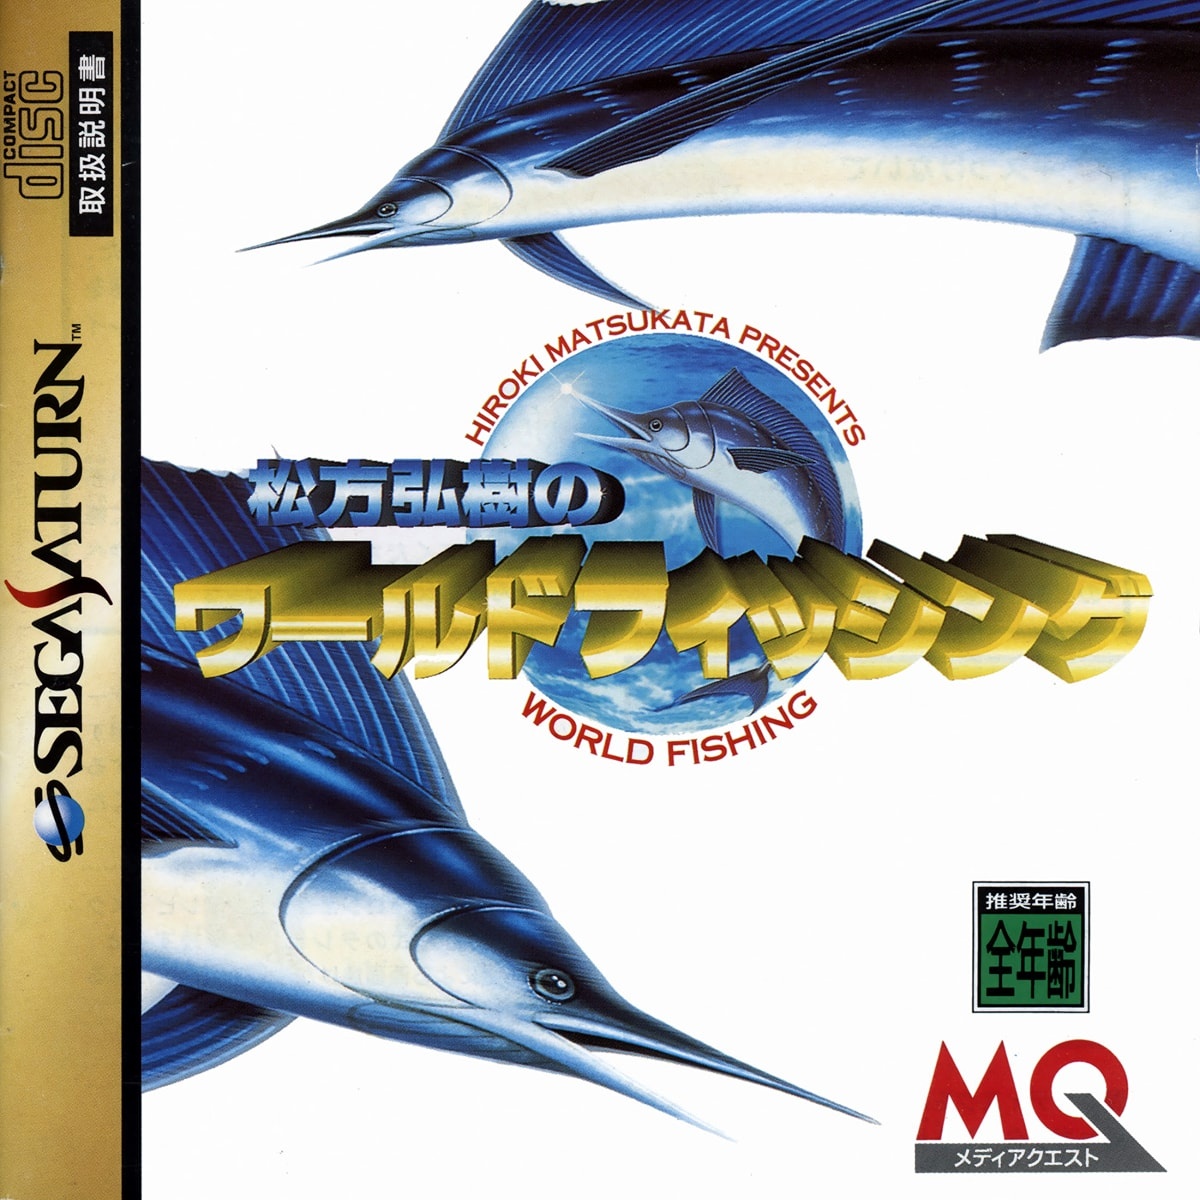 Capa do jogo Matsukata Hiroki no World Fishing